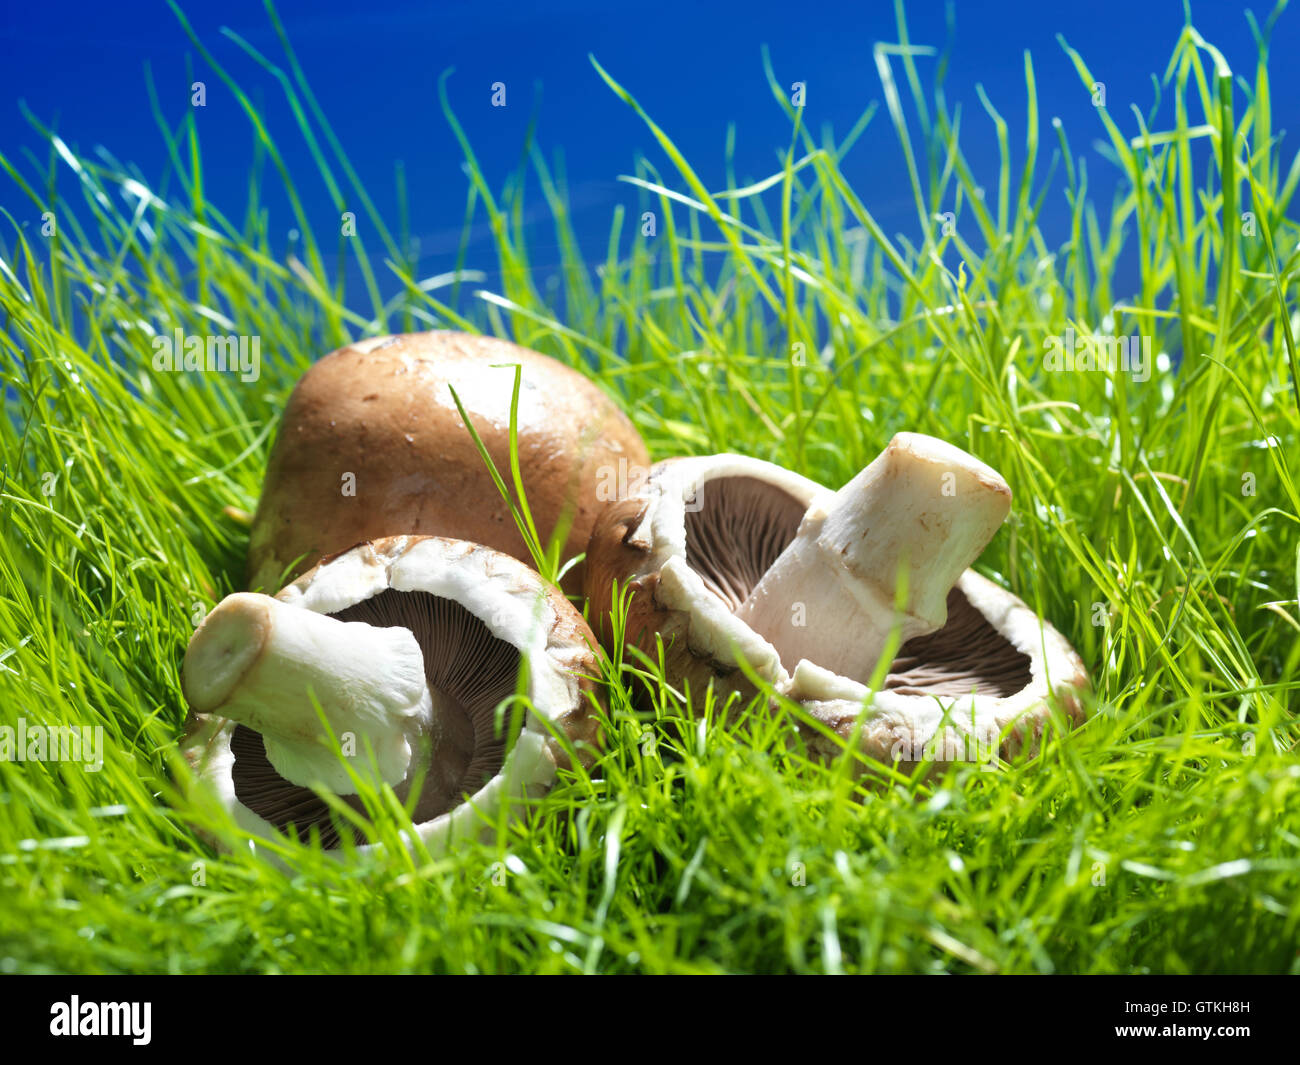 Funghi Cremini in erba verde sotto il luminoso Sky Food still life Foto Stock